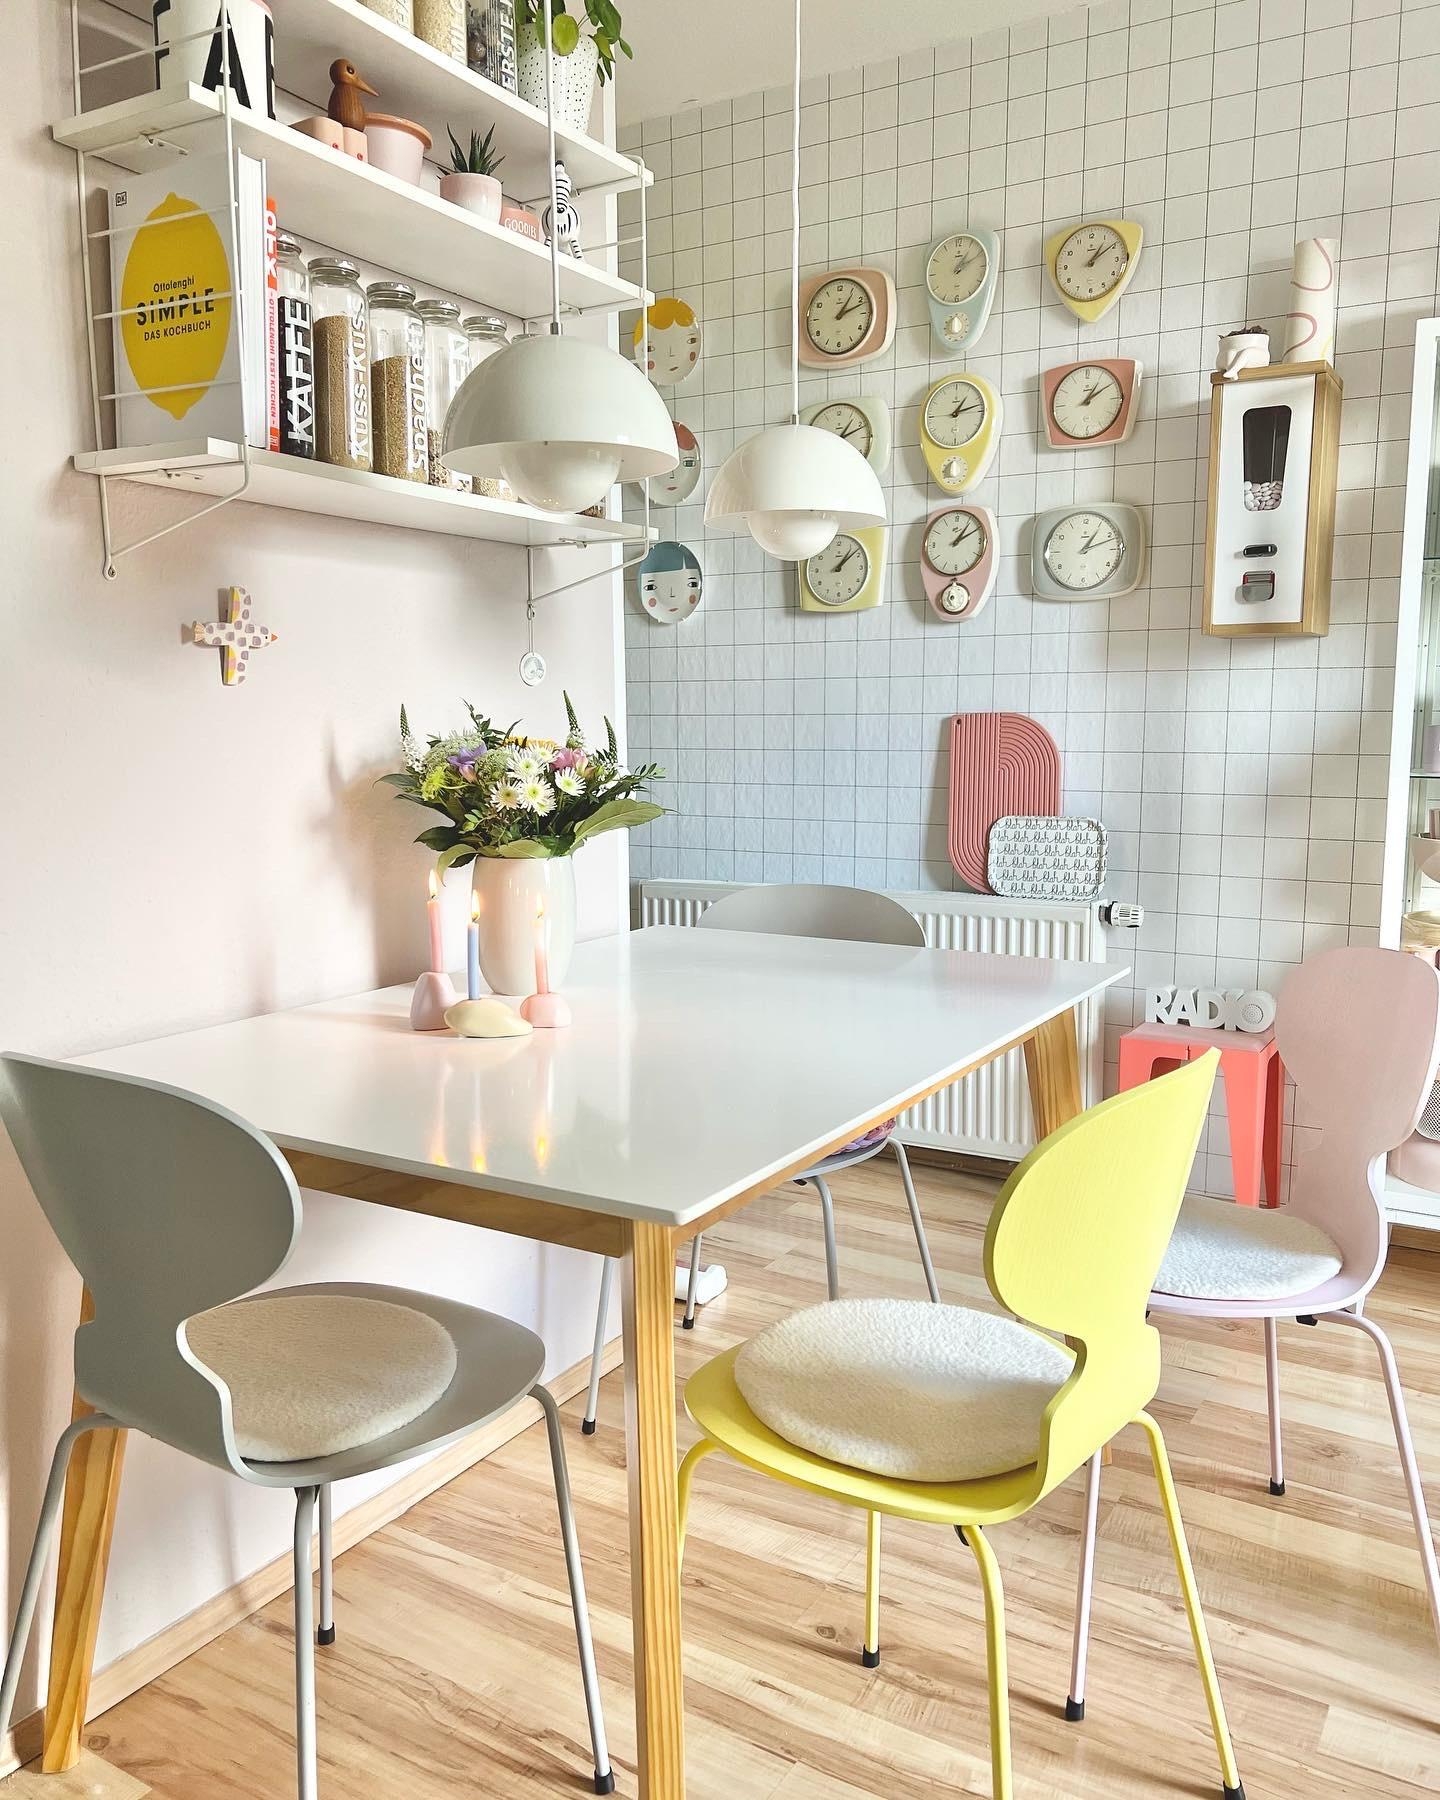 #interior #interiordesign #couchliebt #küche #pastell #flowerpot #blumen #50er #60er #retro #küchenuhren #sammlung